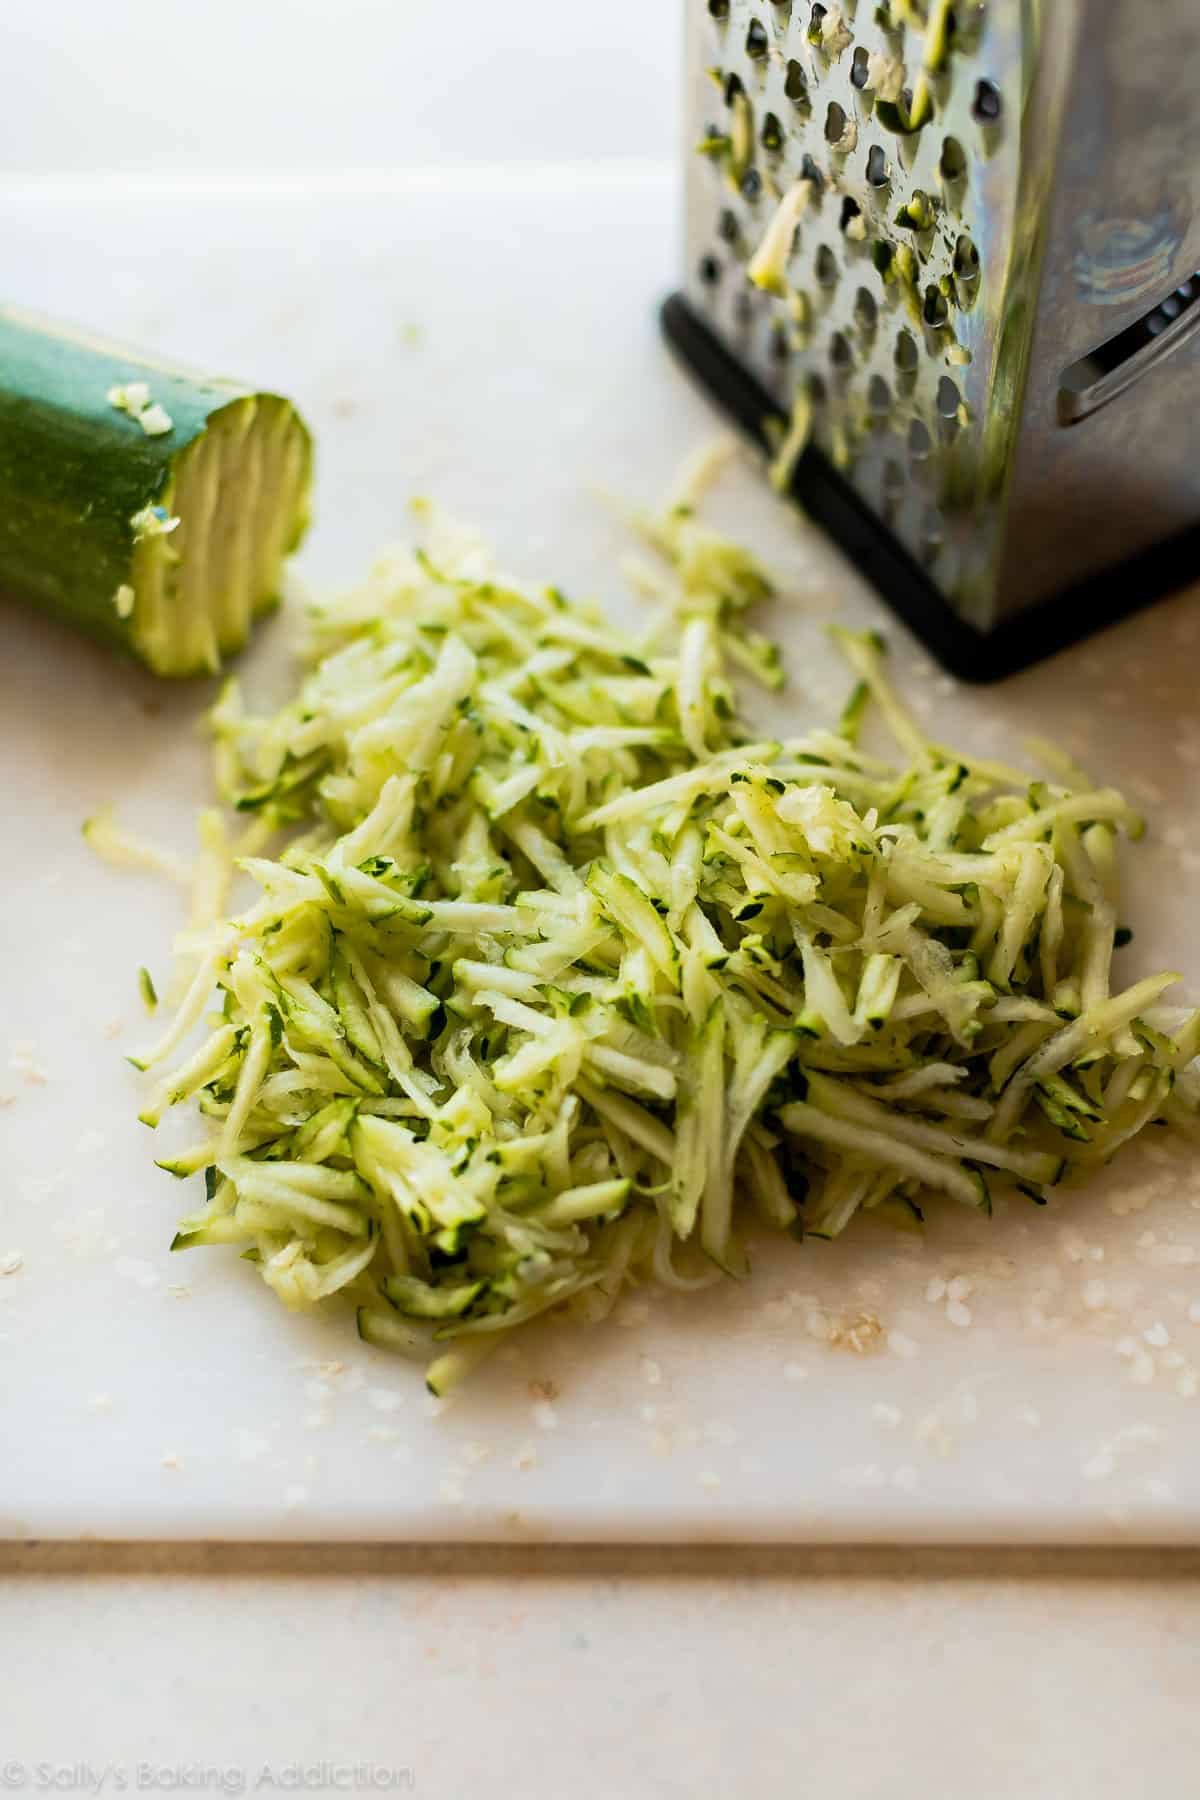 Shredded zucchini on a white cutting board